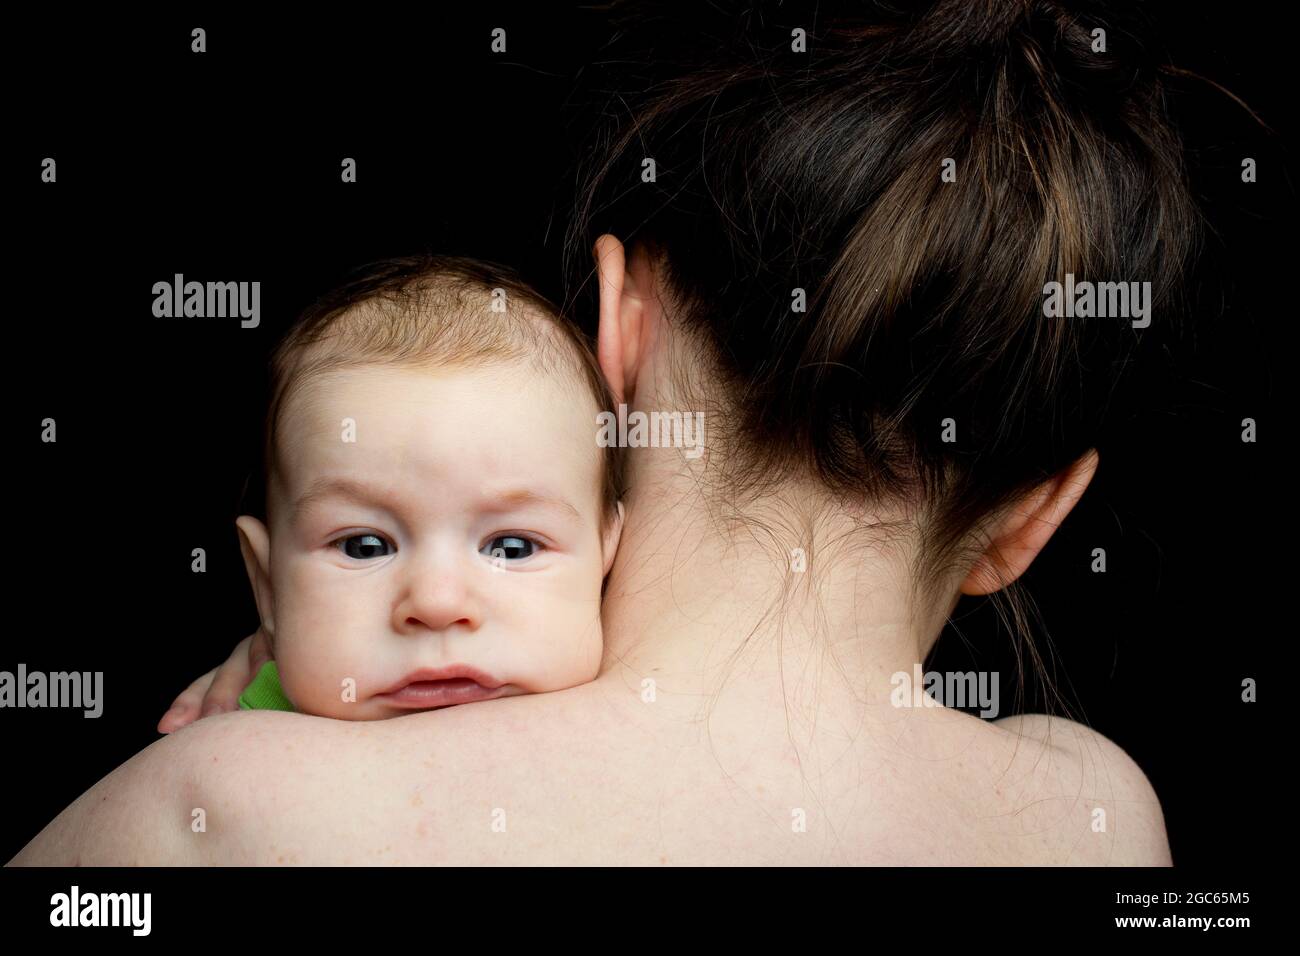 Baby auf der Schulter der Mutter, ohne Emotionen auf die Kamera schauend. Auf schwarzem Hintergrund. Stockfoto